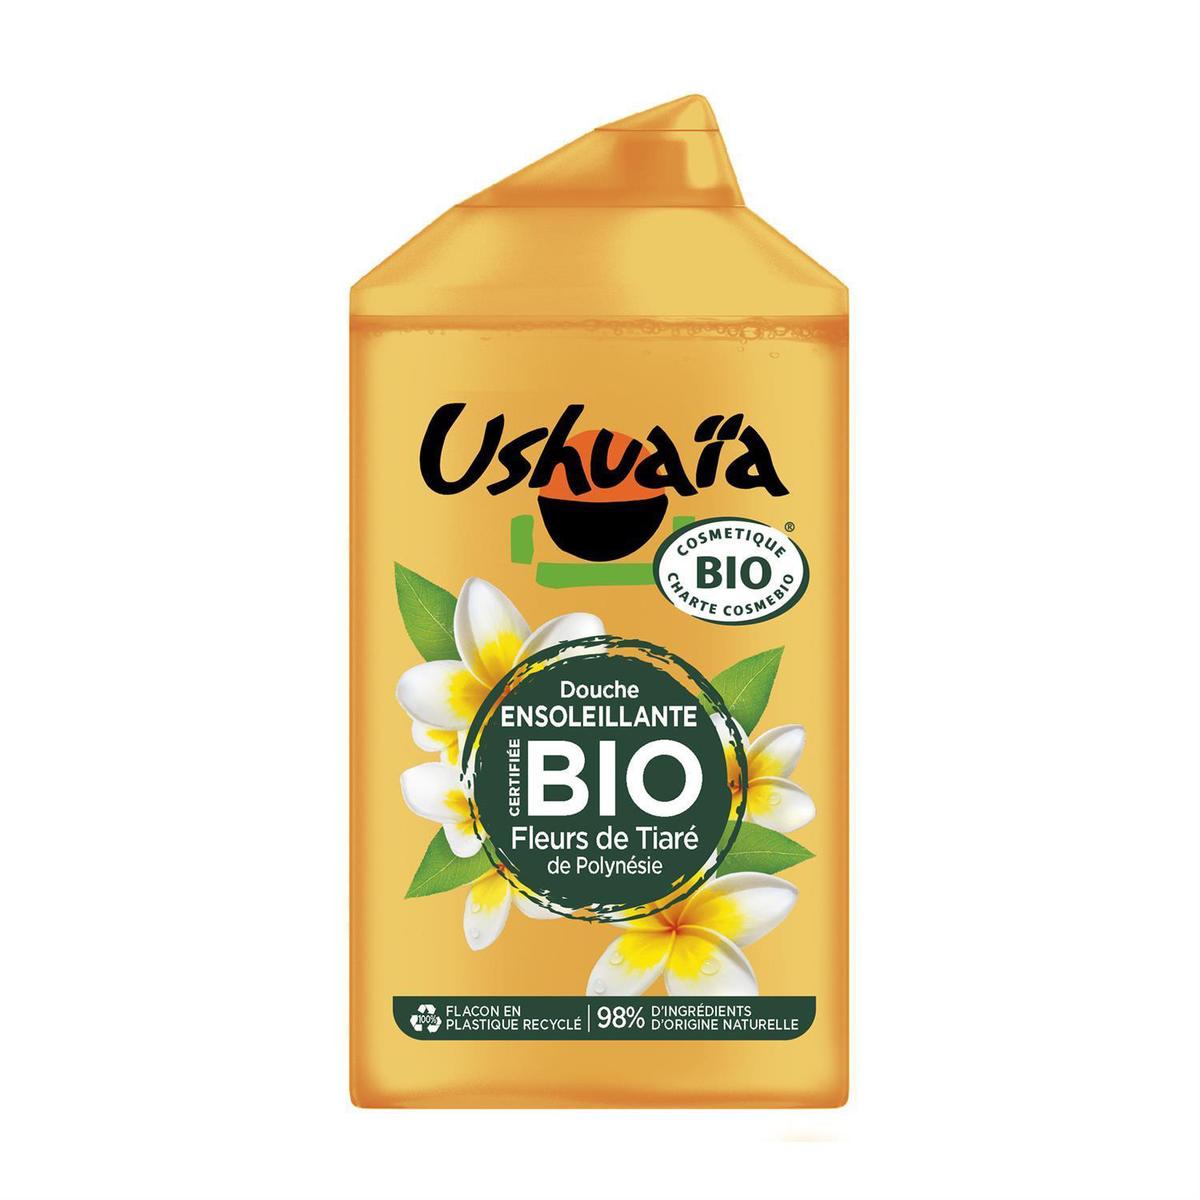 Acheter Ushuaïa Gel Douche Certifié Bio Fleurs de Tiaré de Polynésie